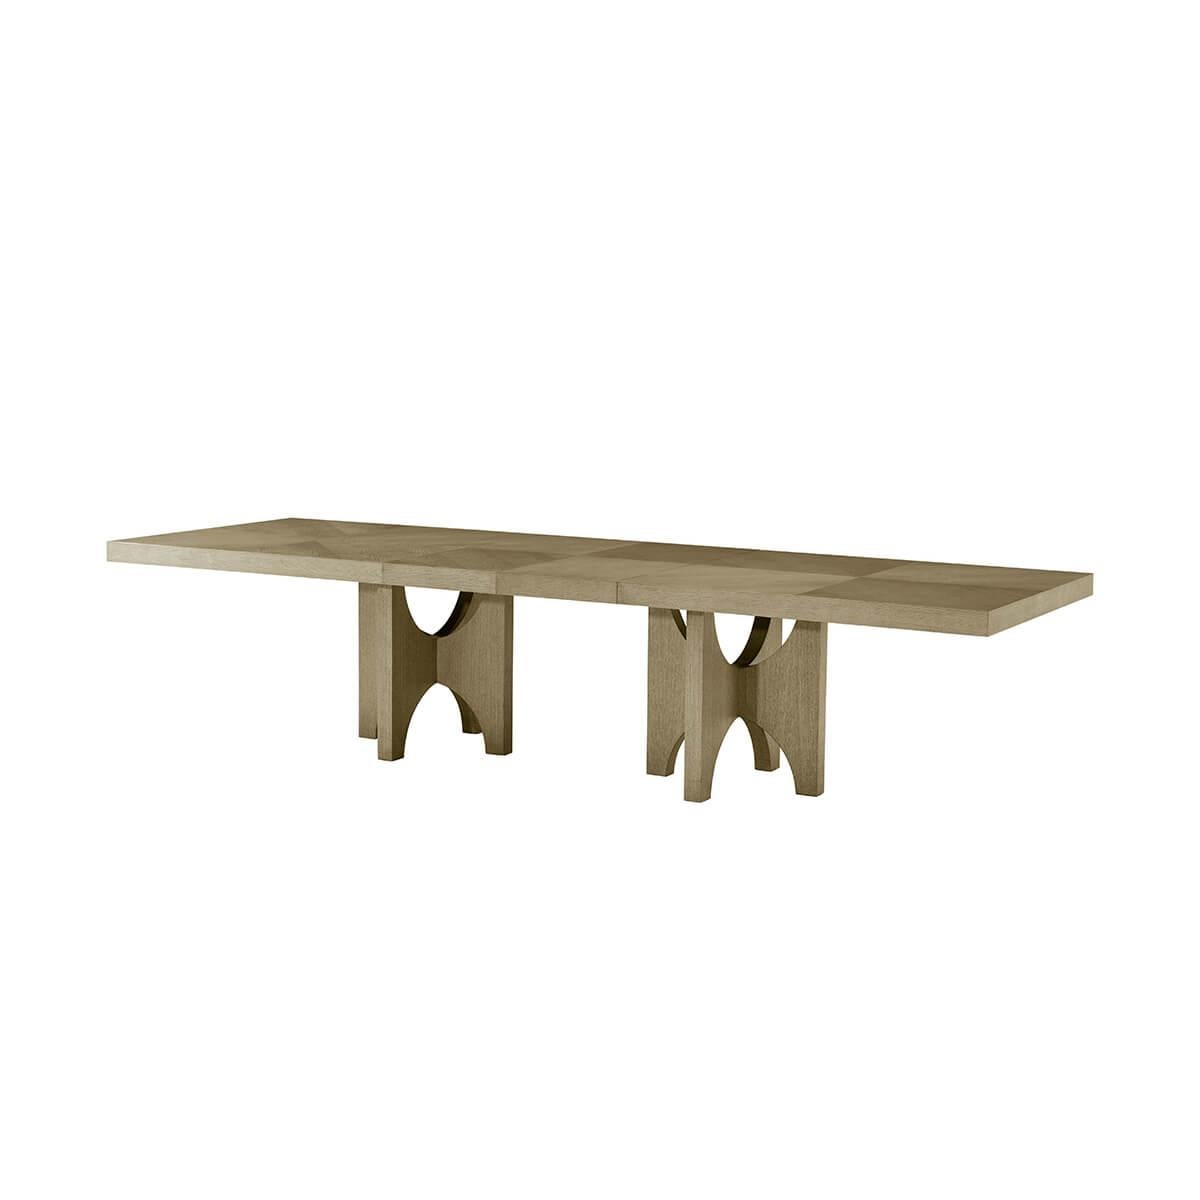 
Moderner Esstisch aus heller Esche, gefertigt aus hochwertigem Eschenholz in der Ausführung Dune. Dieser Esstisch besticht durch seine reiche Textur und sein schlichtes, helles Finish, das jedem Esszimmer einen Hauch von Eleganz verleiht. 

Mit